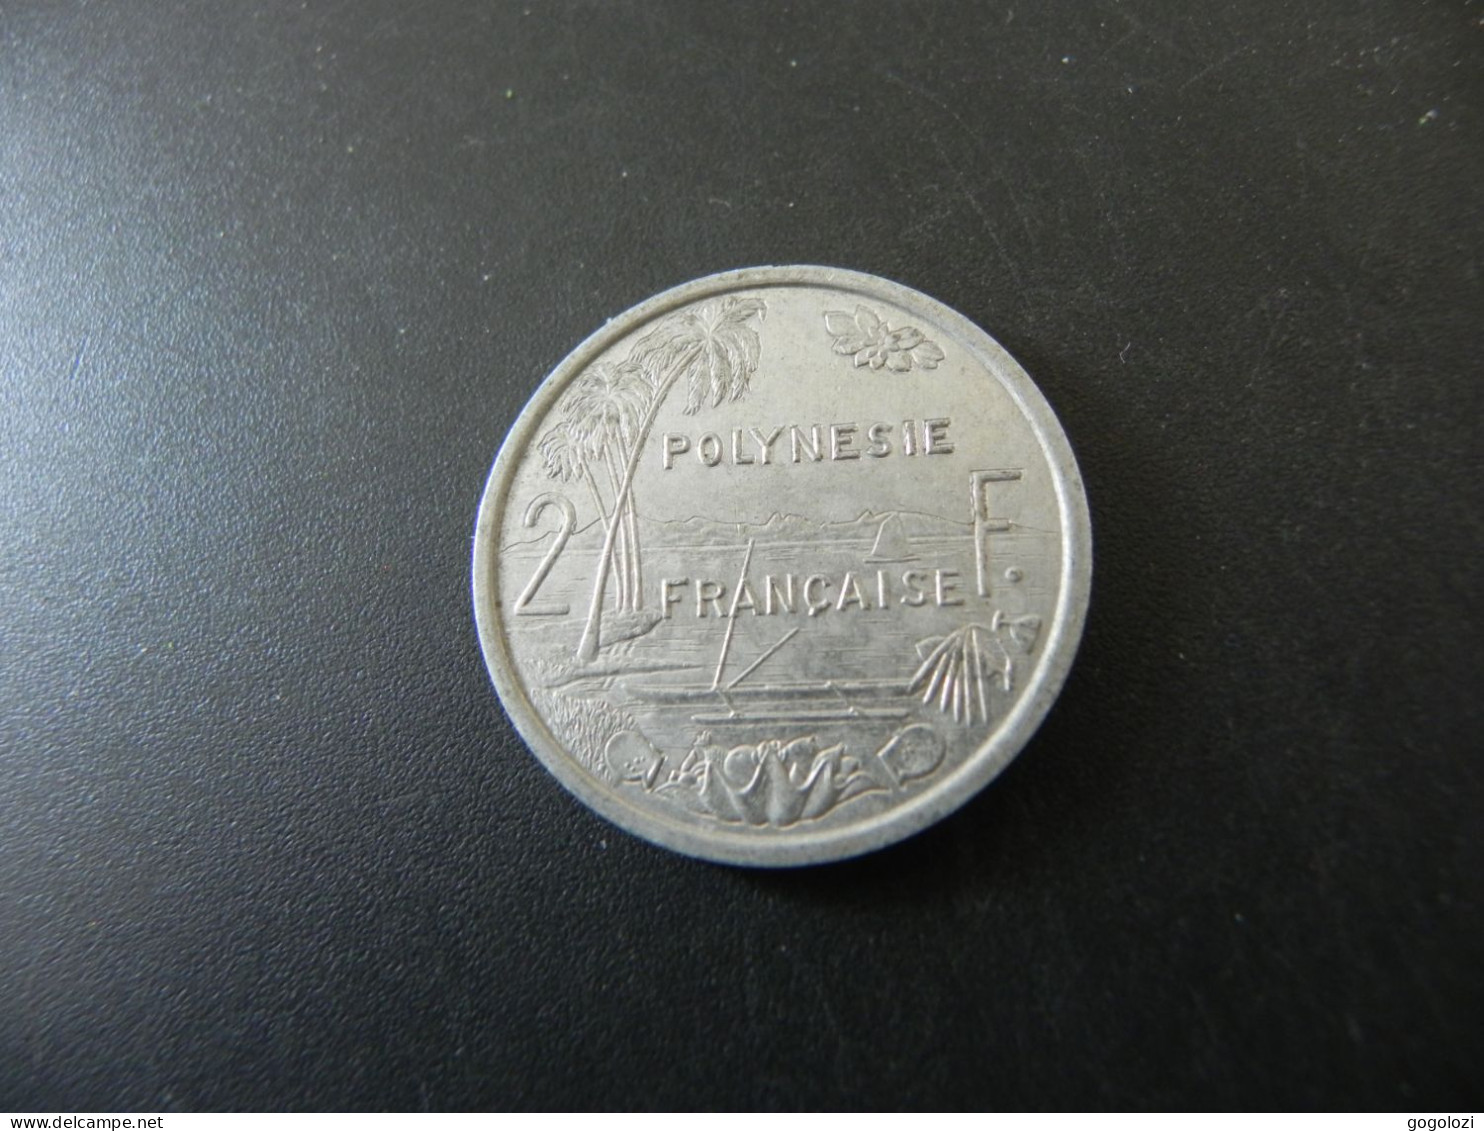 Polynesie Française 2 Francs 2002 - Polynésie Française